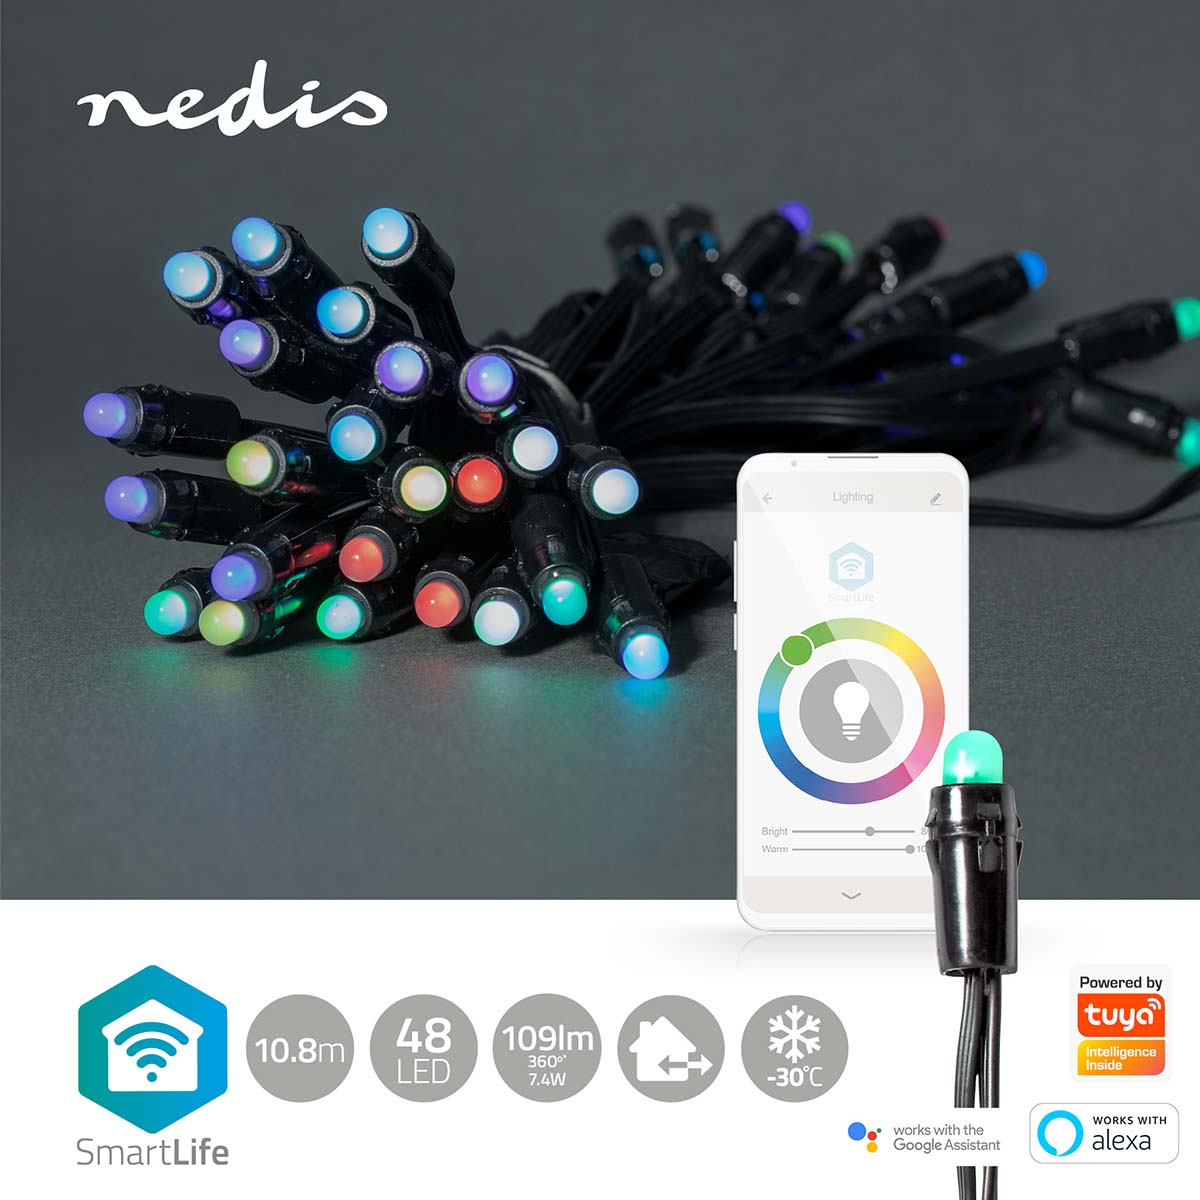 Luzes Nedis Wi-Fi RGB, 48 LEDs em 10.8m, oferecem iluminação inteligente para um Natal vibrante, controlável via Wi-Fi.